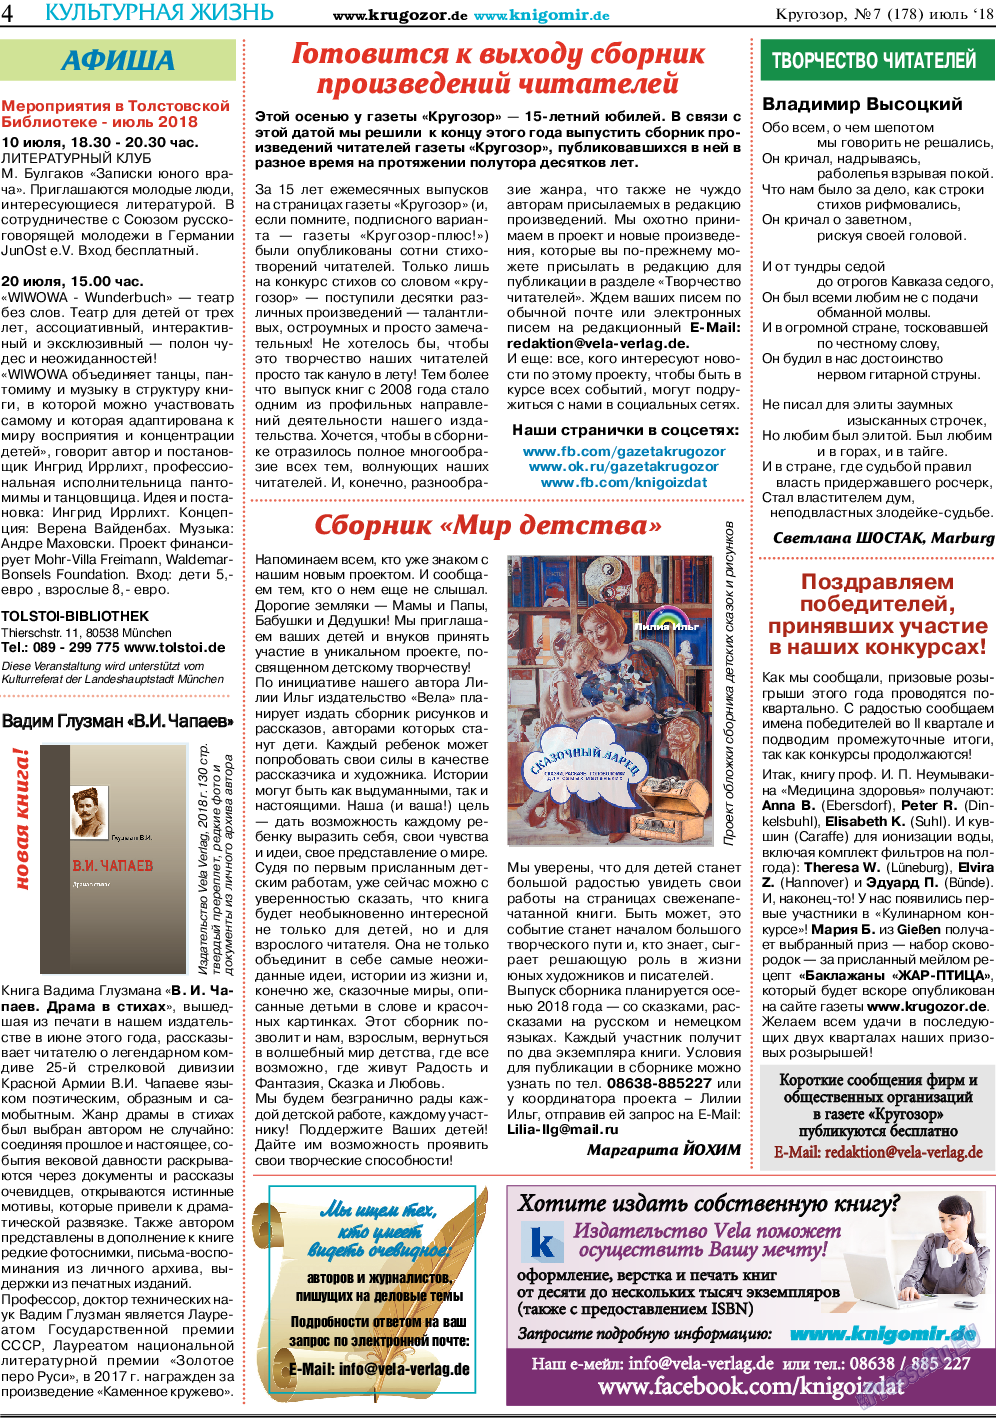 Кругозор, газета. 2018 №7 стр.4